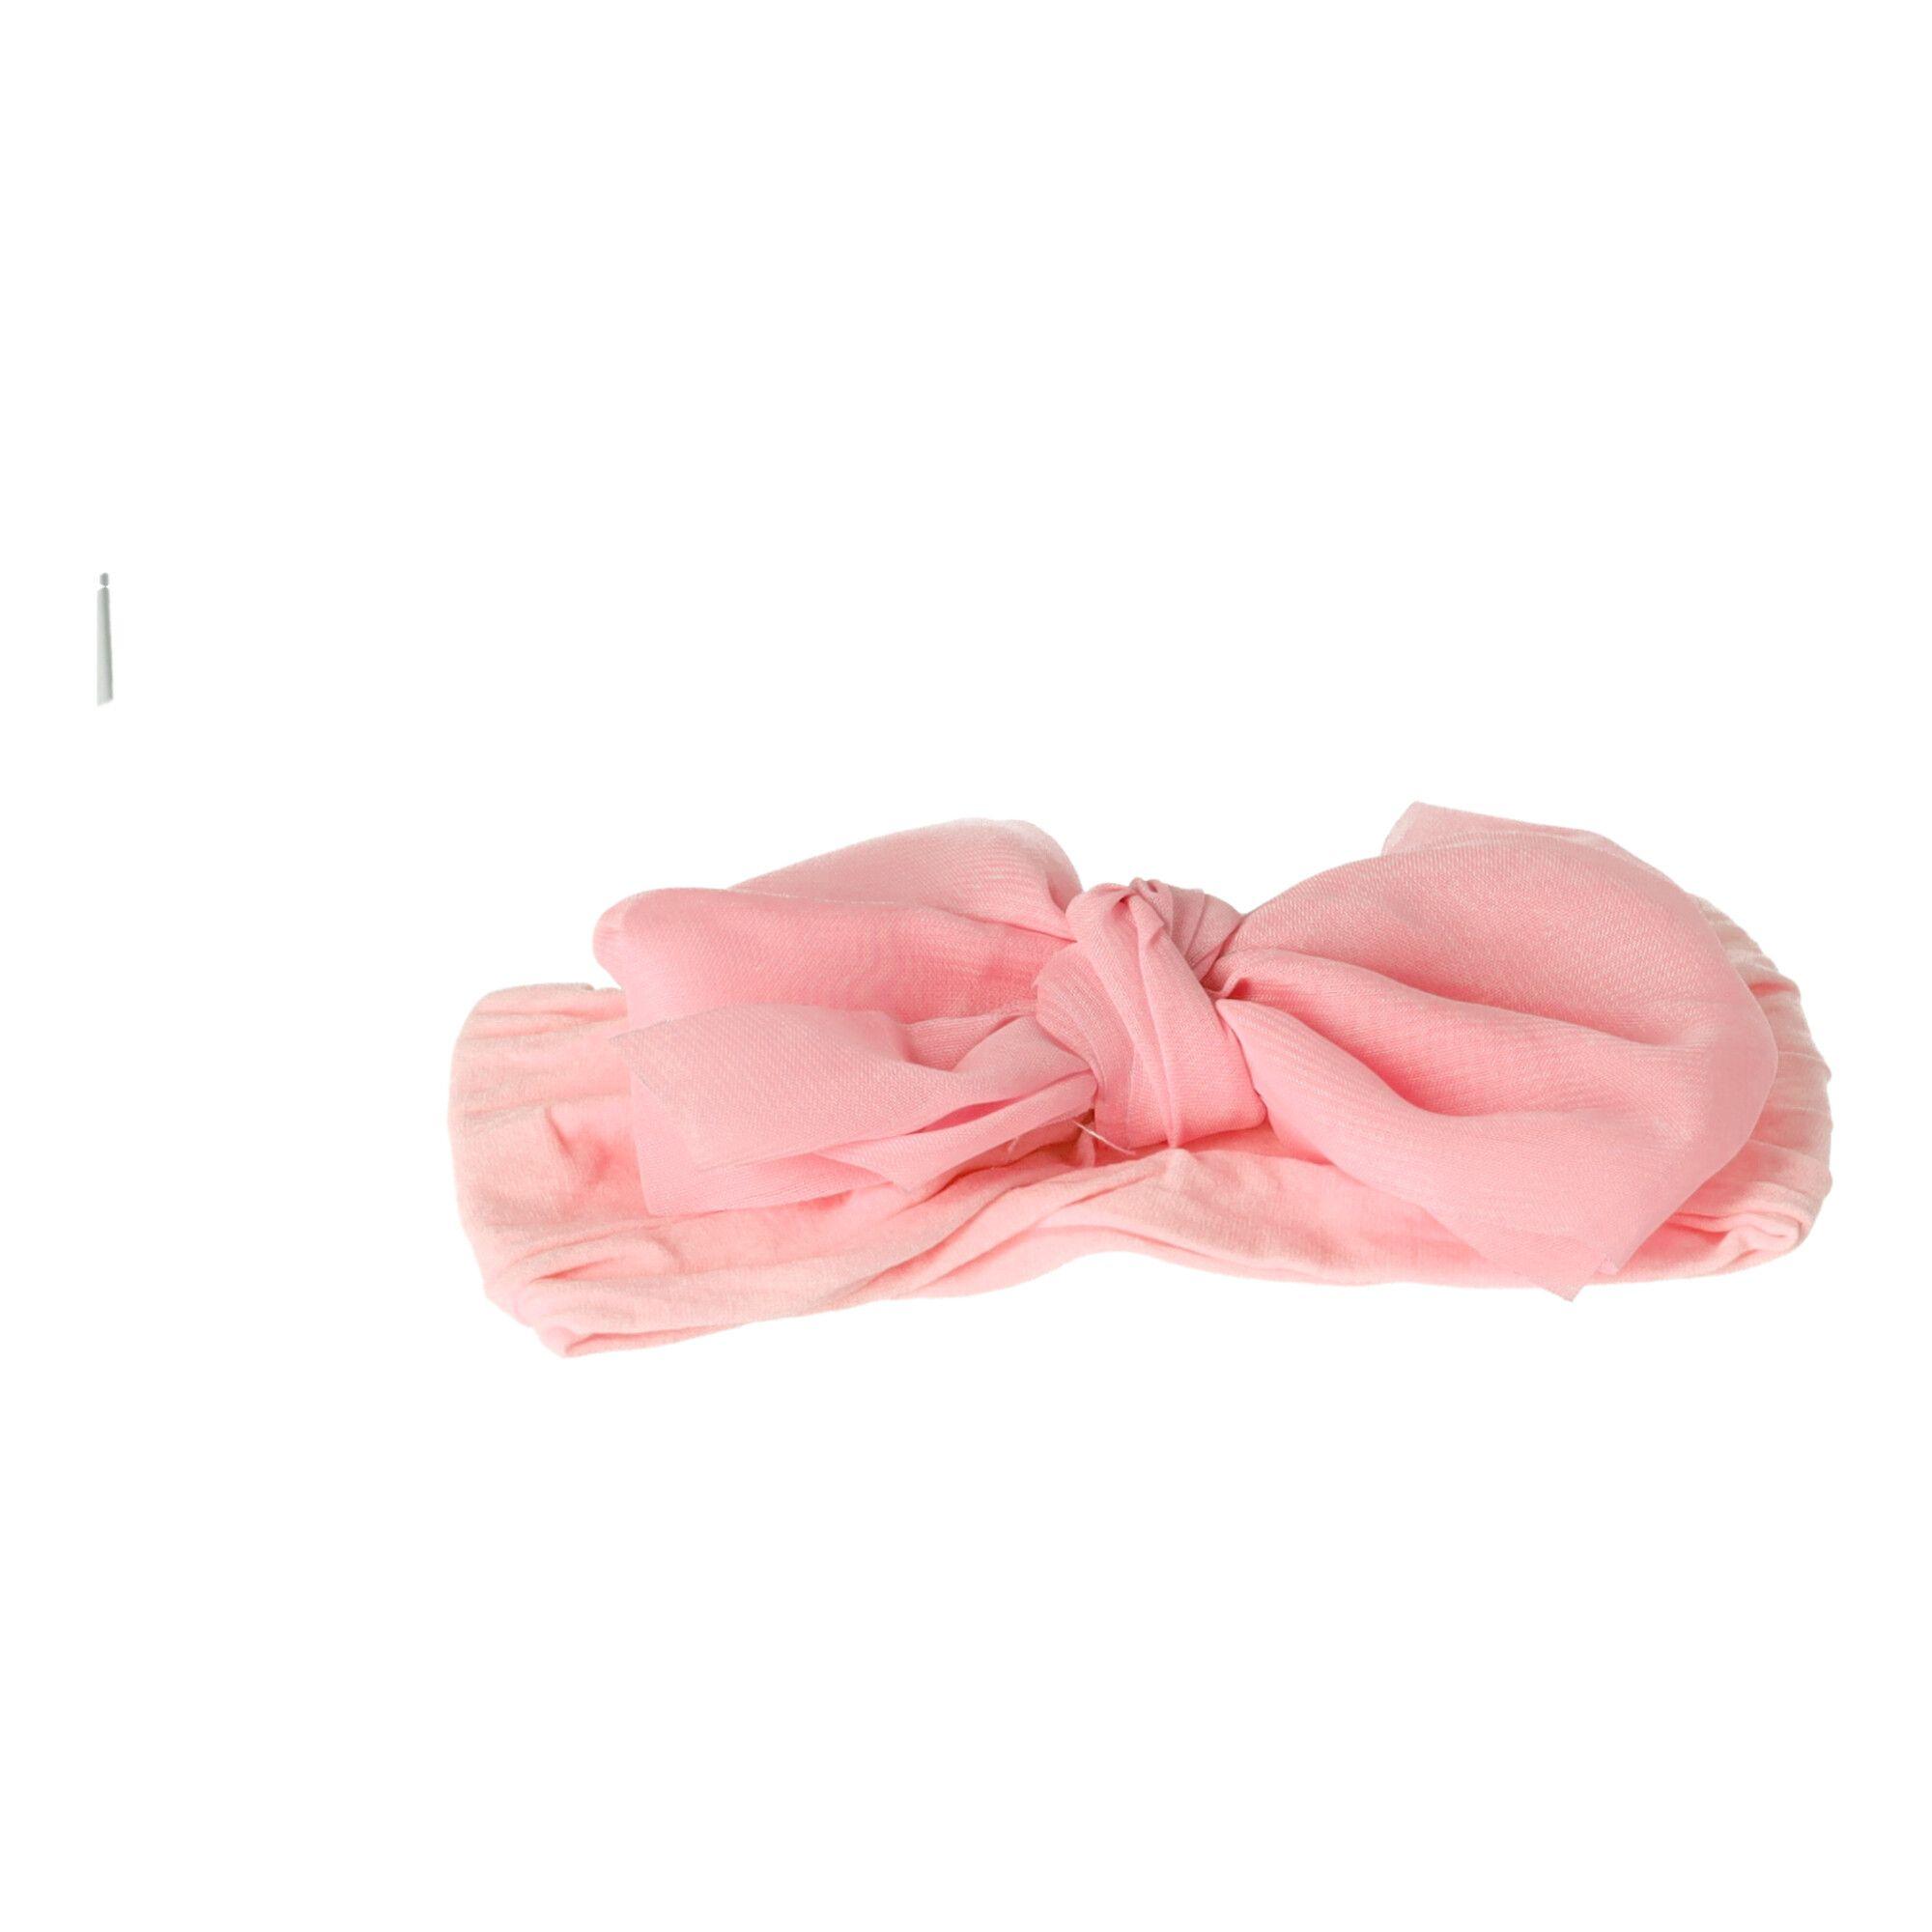 Opaska niemowlęca z kokardą - różowa, szeroka